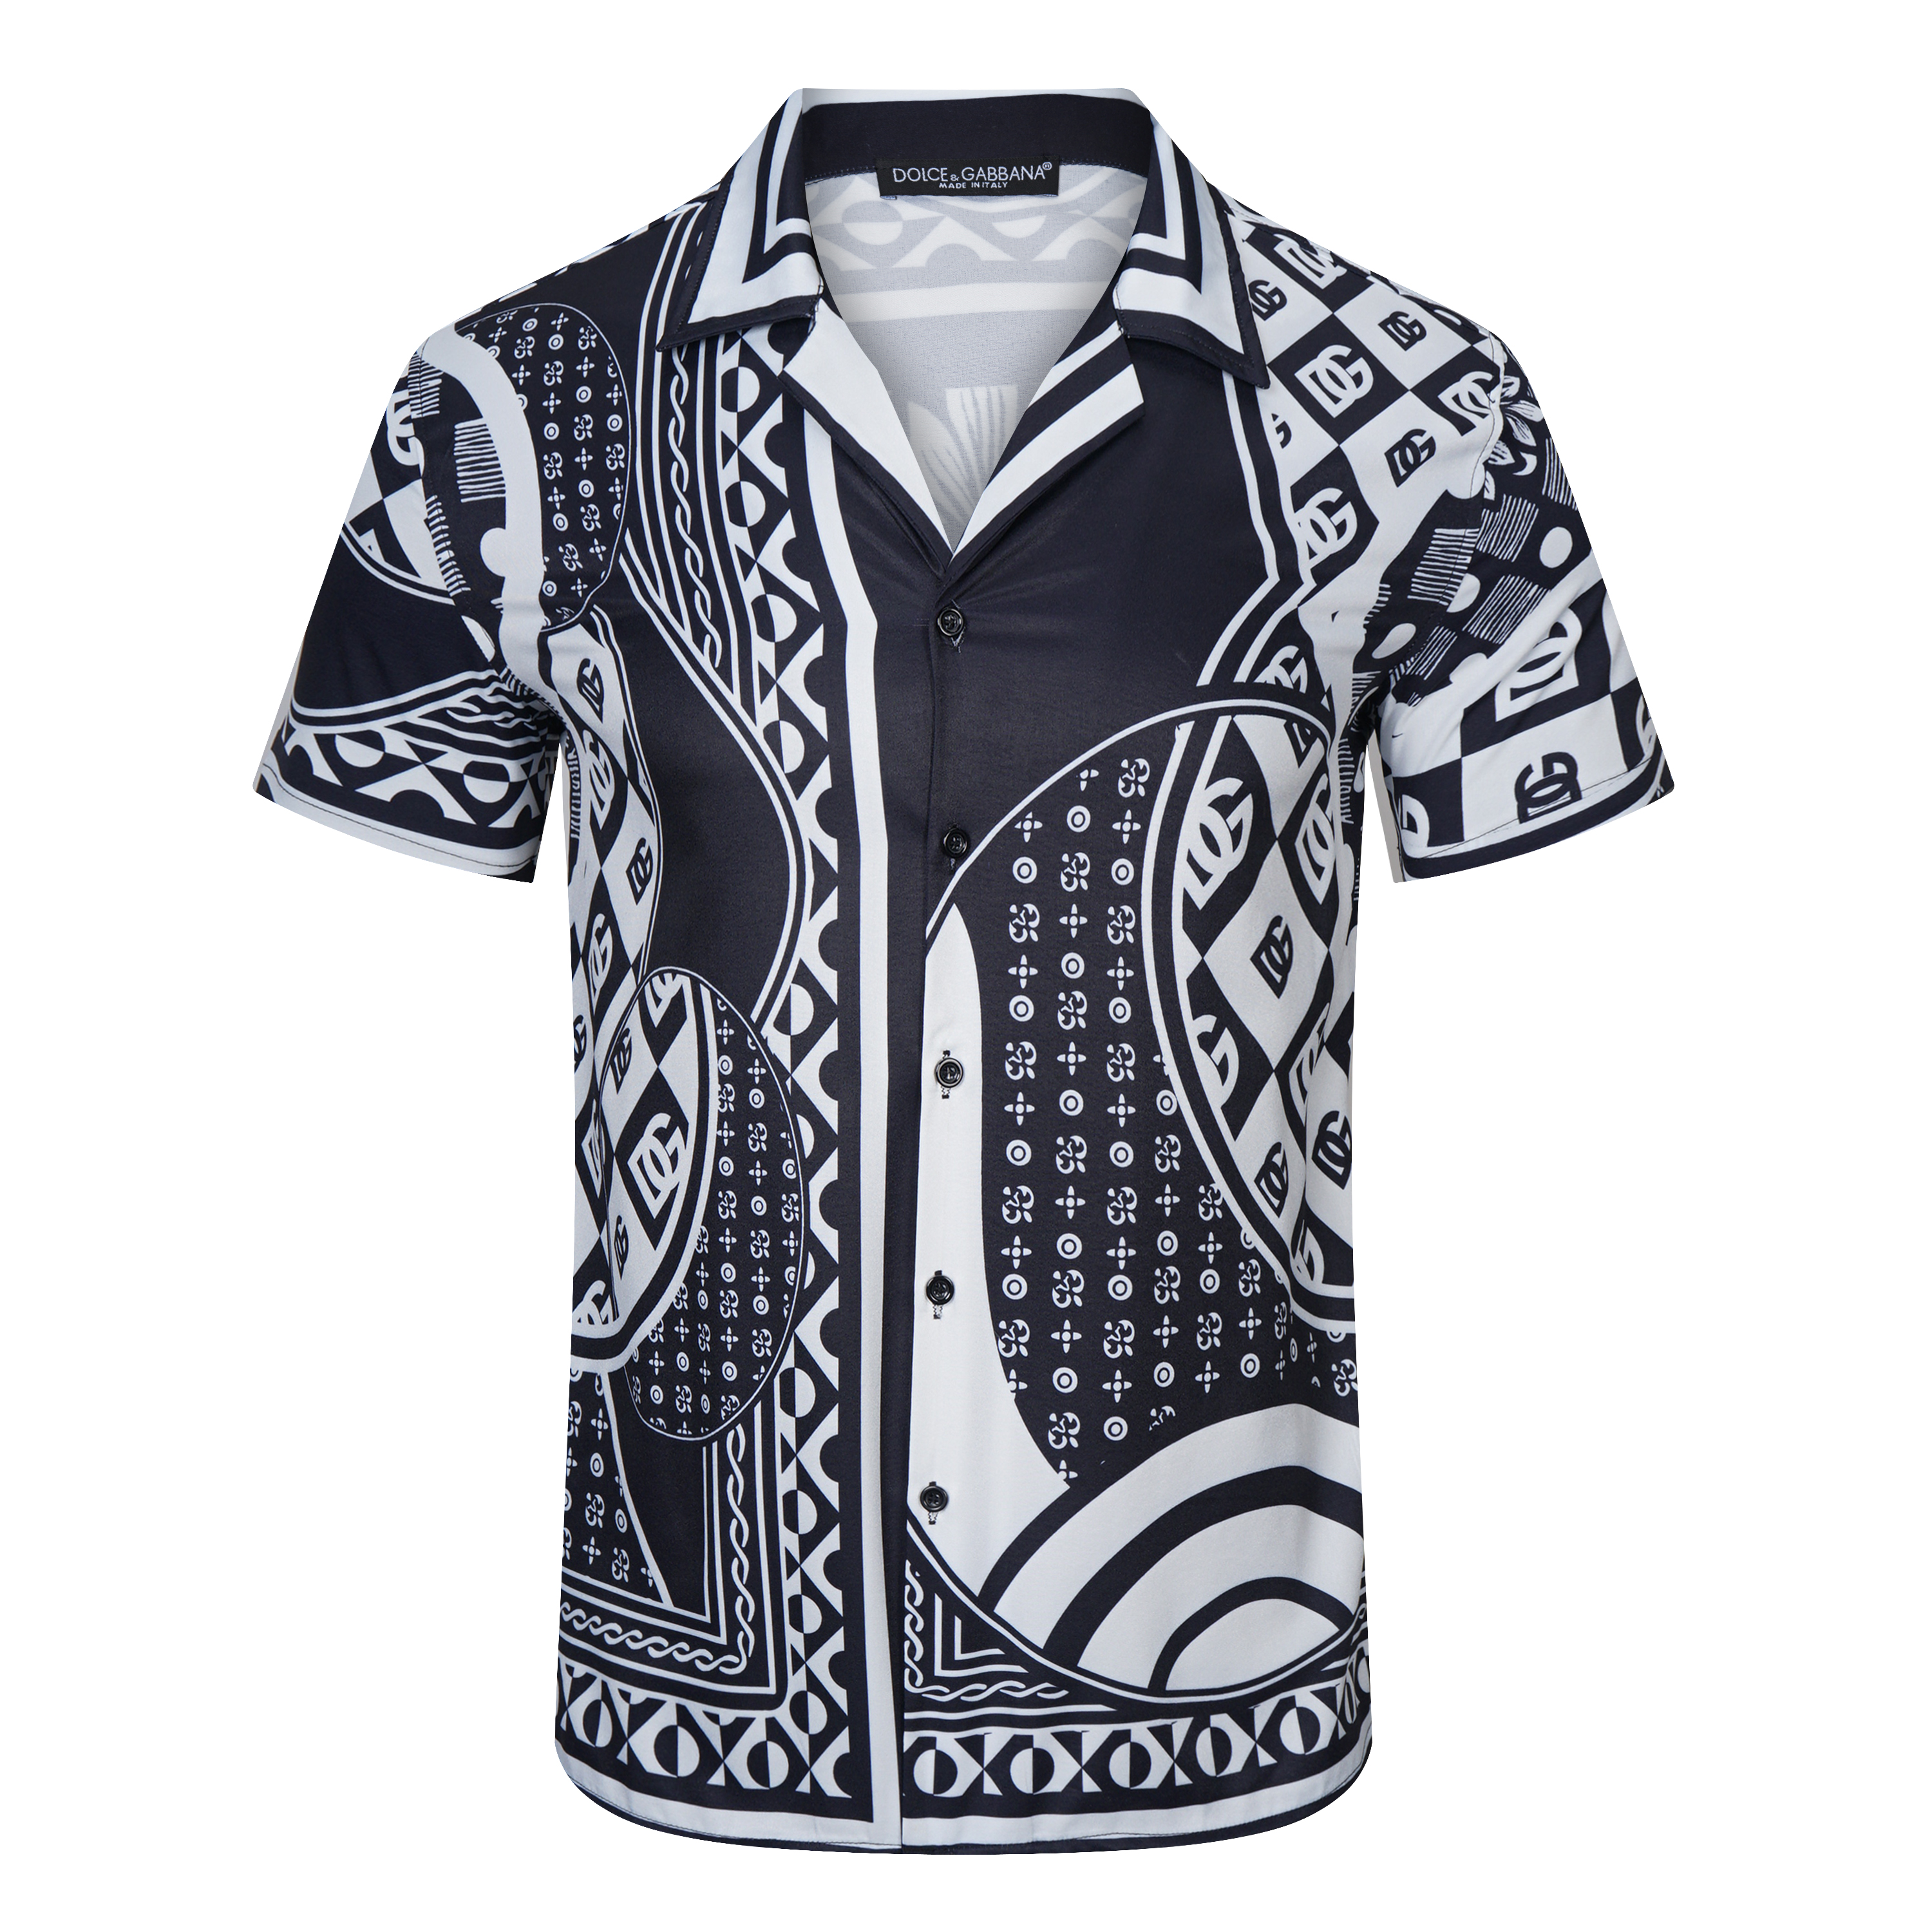 D&G Short Sleeve Shirts For Men # 267638, cheap D&G Shirt, only $33!